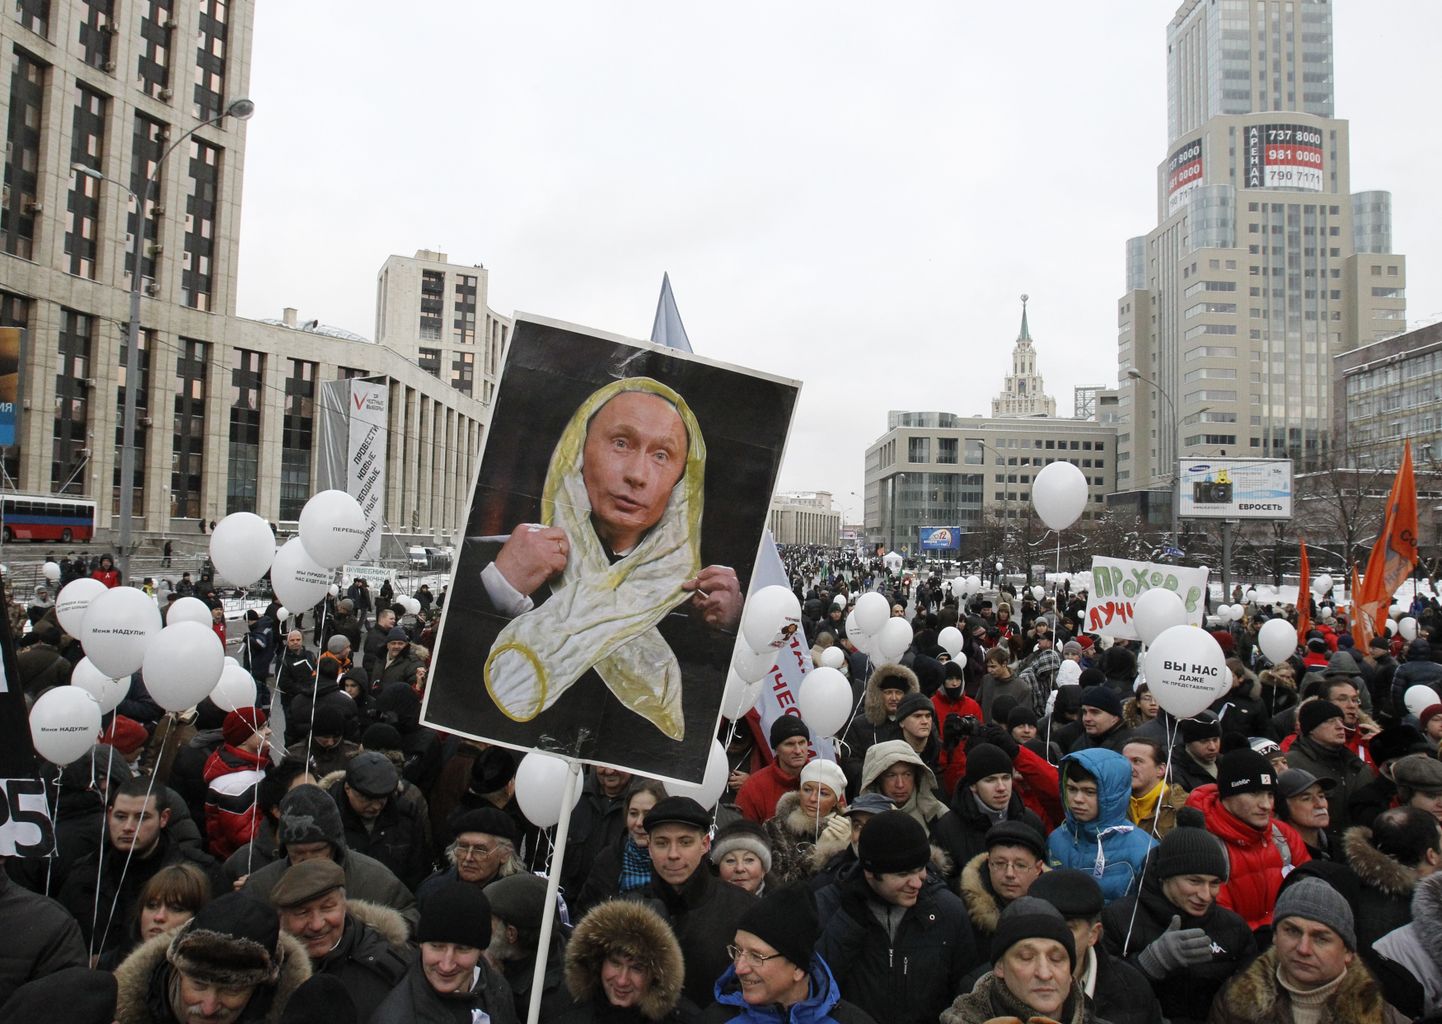 Putini-vastane meeleavaldus Moskvas 24. detsembril 2011. Sellist pilti pole Moskvas mõnda aega nähtud, kuid presidendivalimistel toimus palju kodanikuvastupanu intsidente.